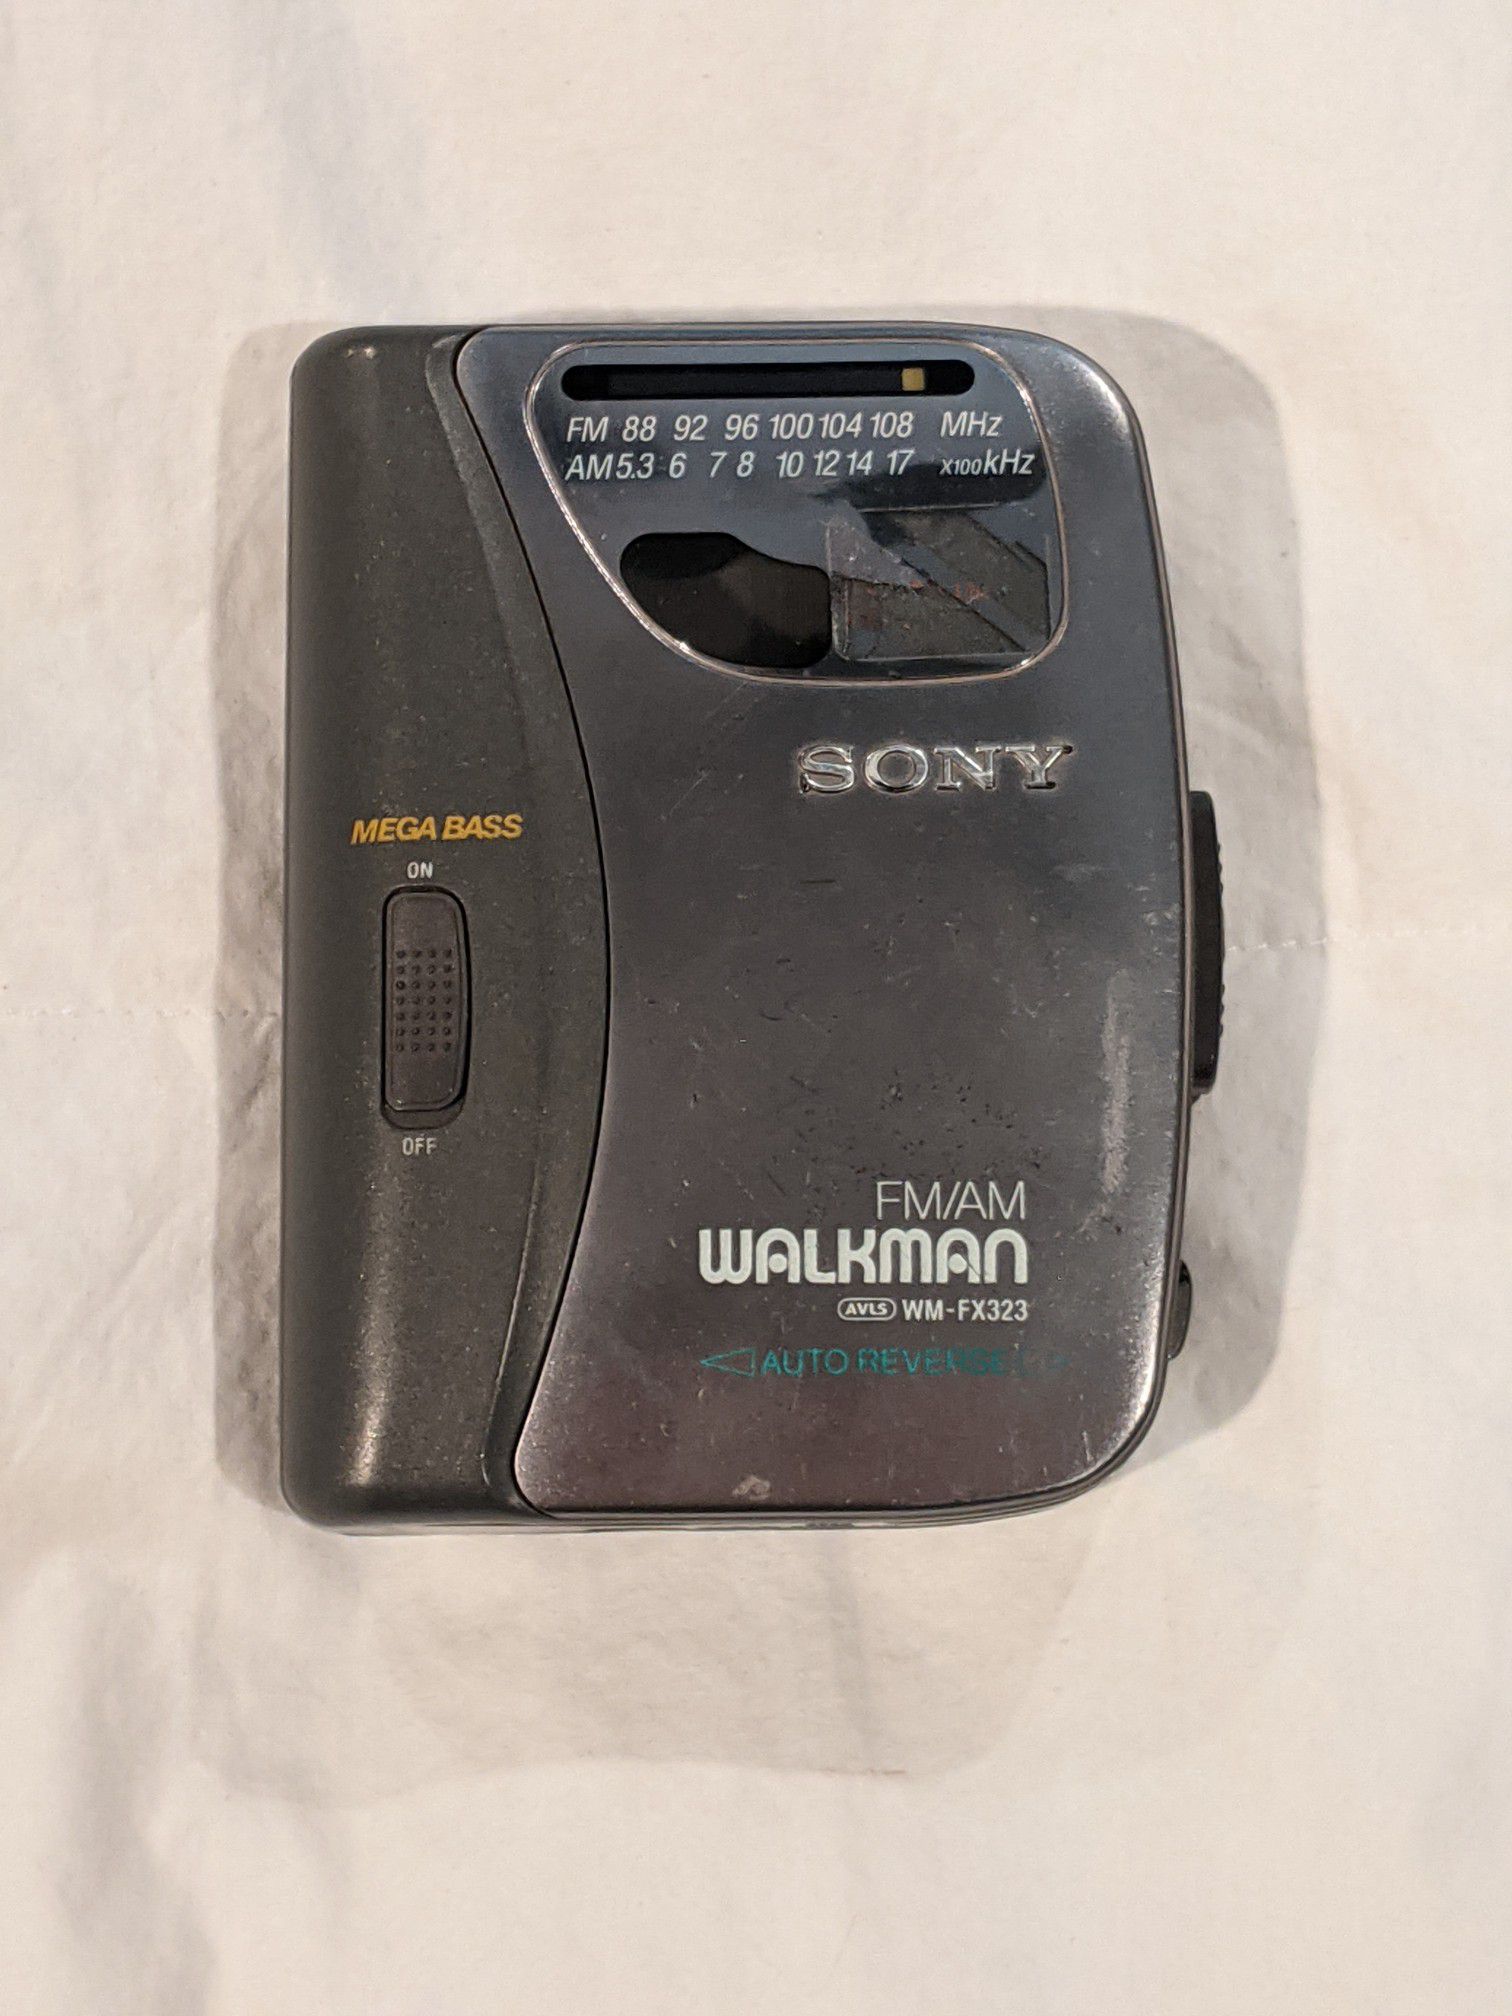 Sony Walkman with AM/FM